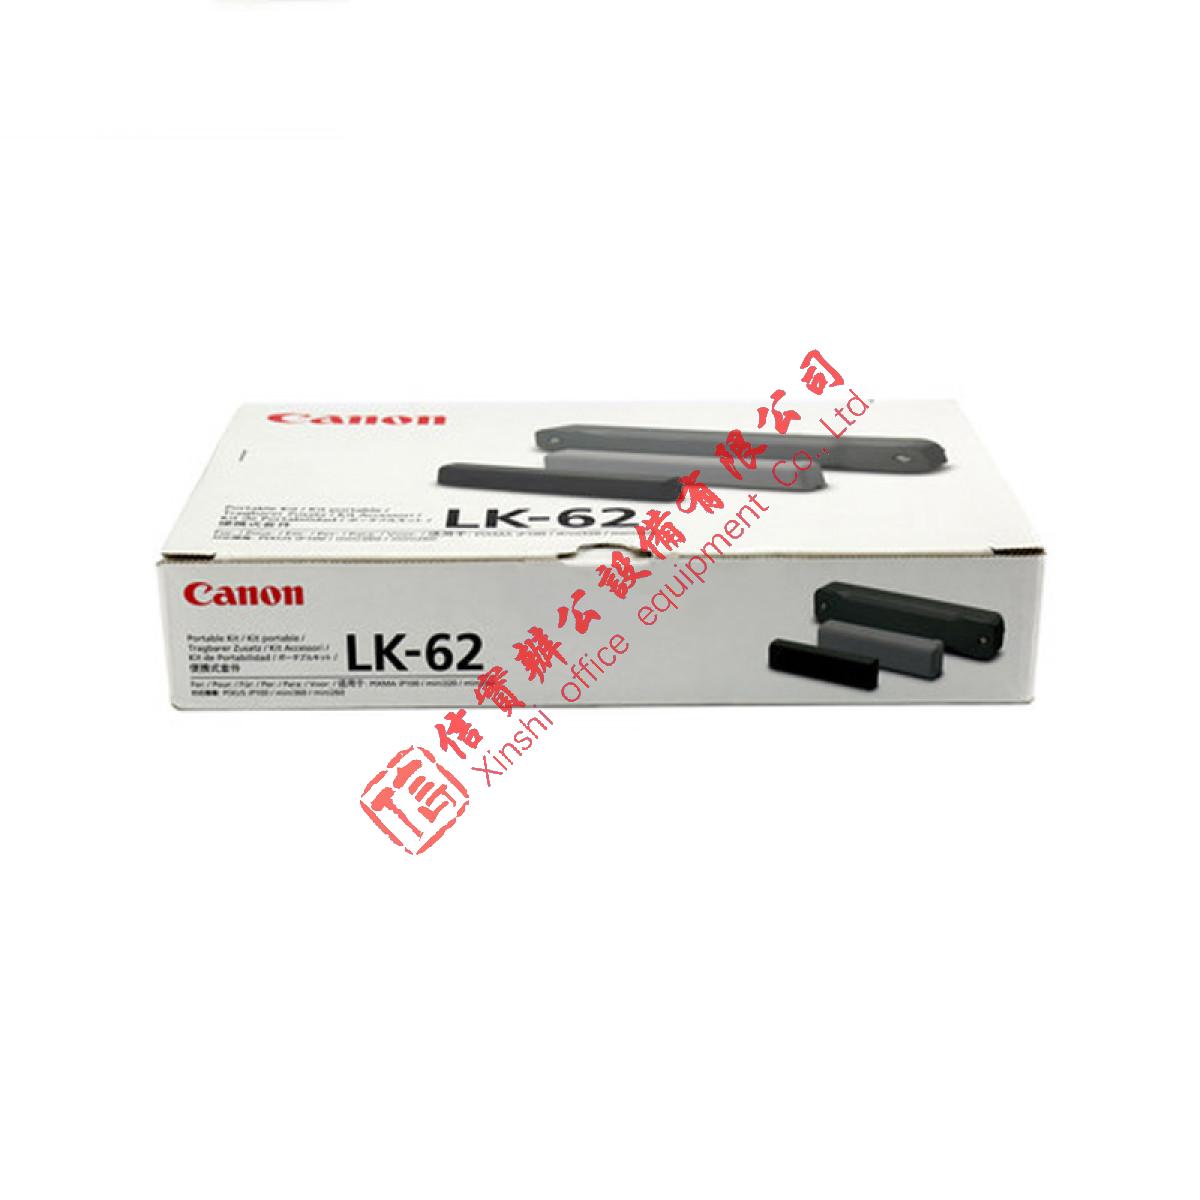 佳能便携式电池LK-62 IP110 I100原装电池IP100 IP110打印机电池